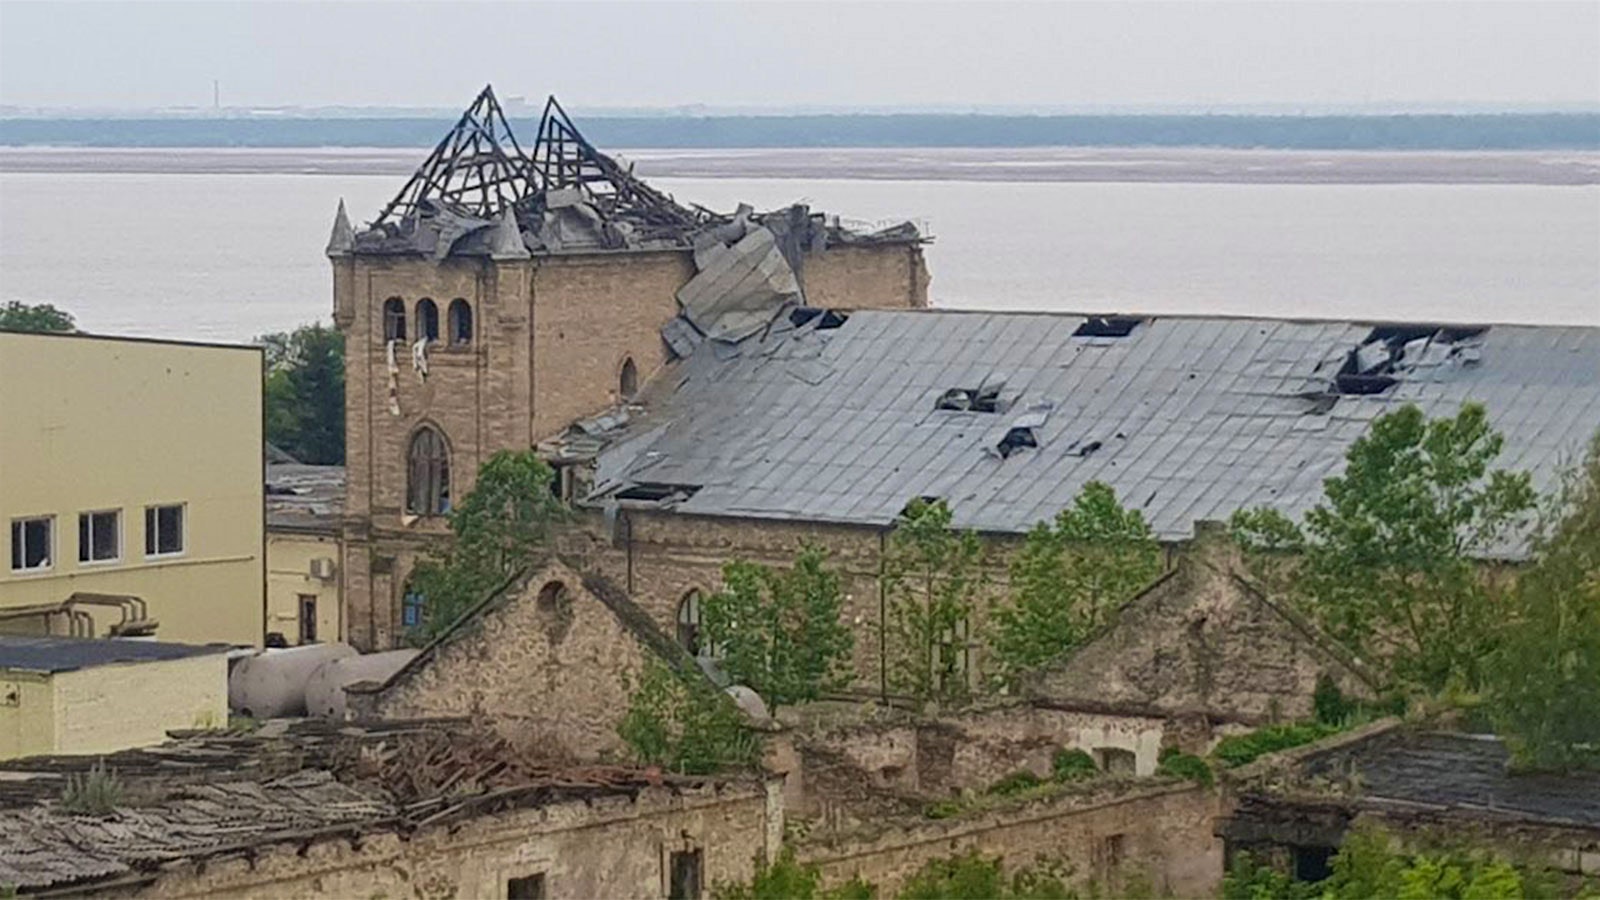  The bombed château-like home of Prince Trubetskoi Winery.